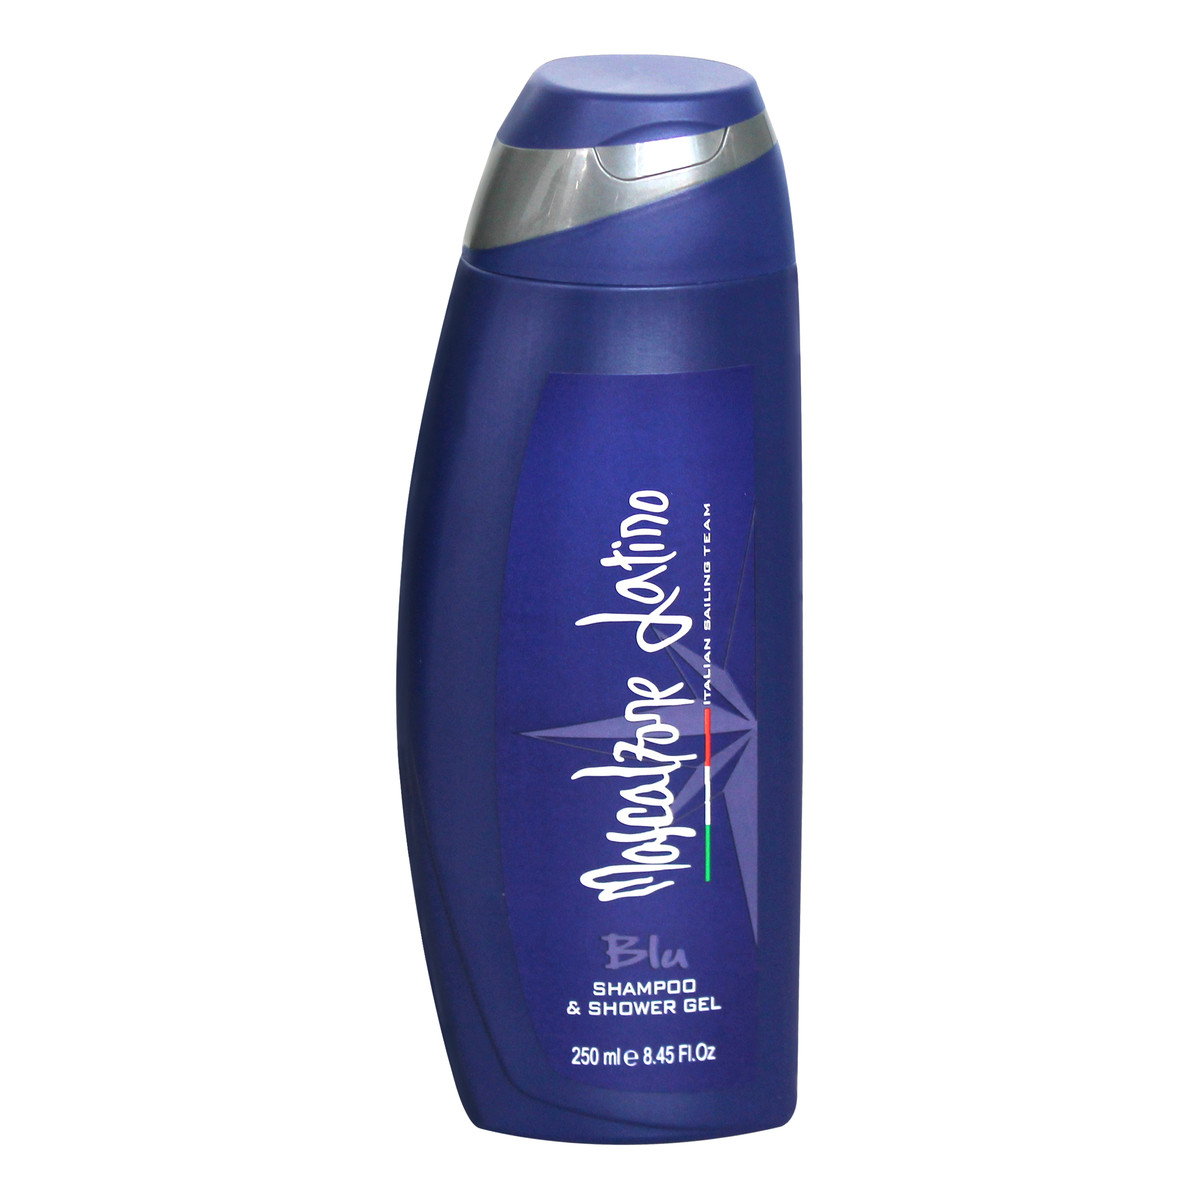 Mascalzone Latino Blu szampon i żel pod prysznic 250ml